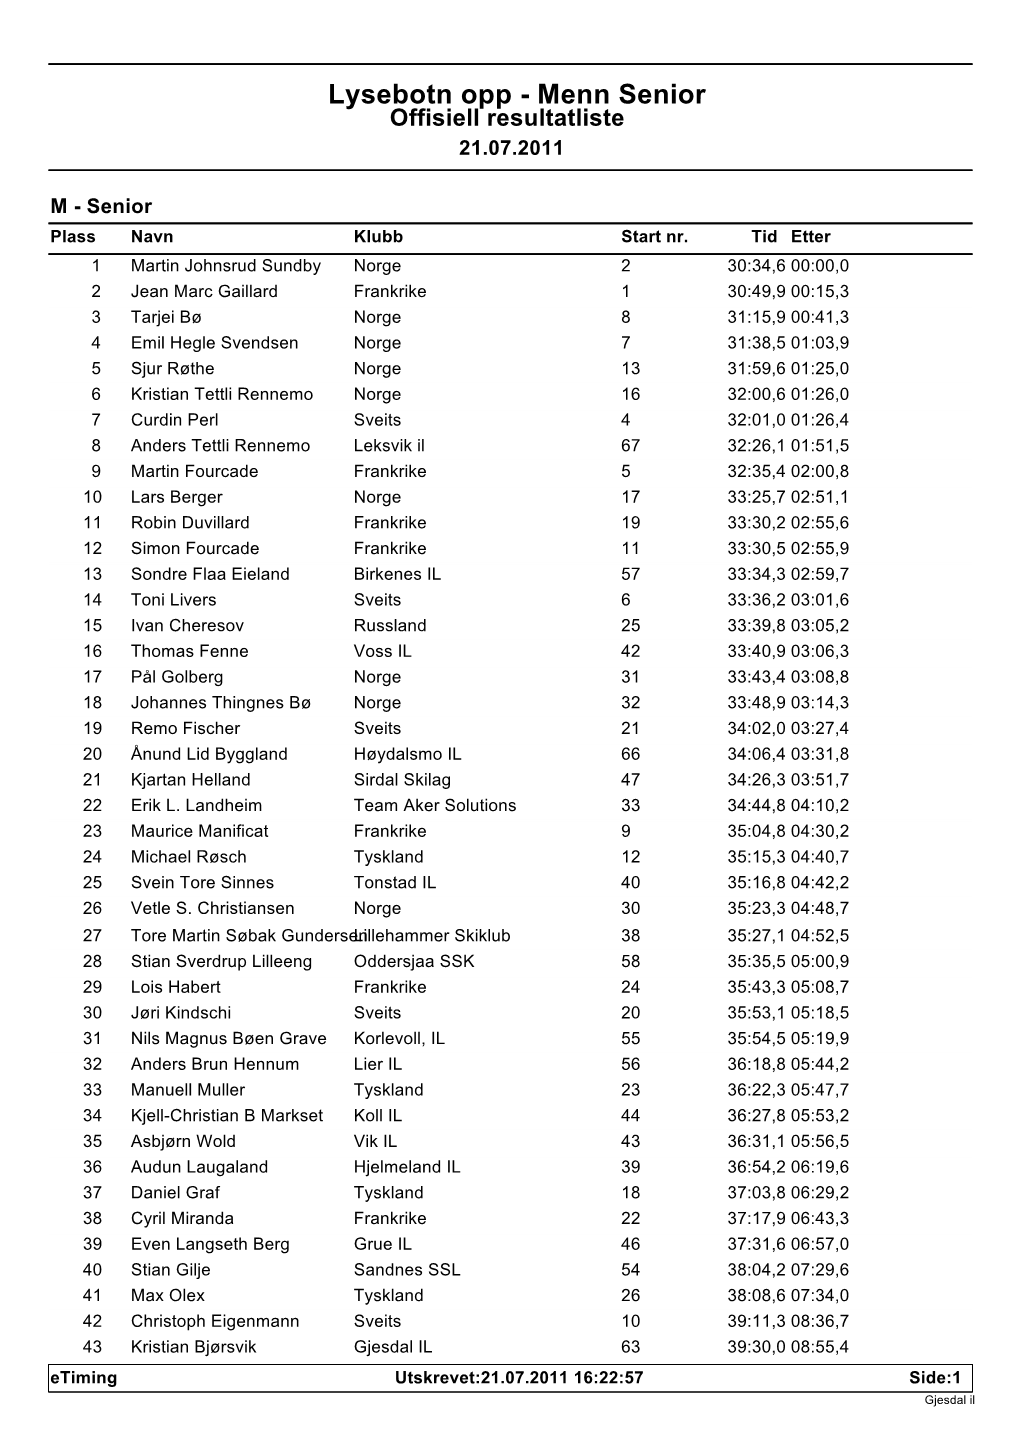 Lysebotn Opp - Menn Senior Offisiell Resultatliste 21.07.2011